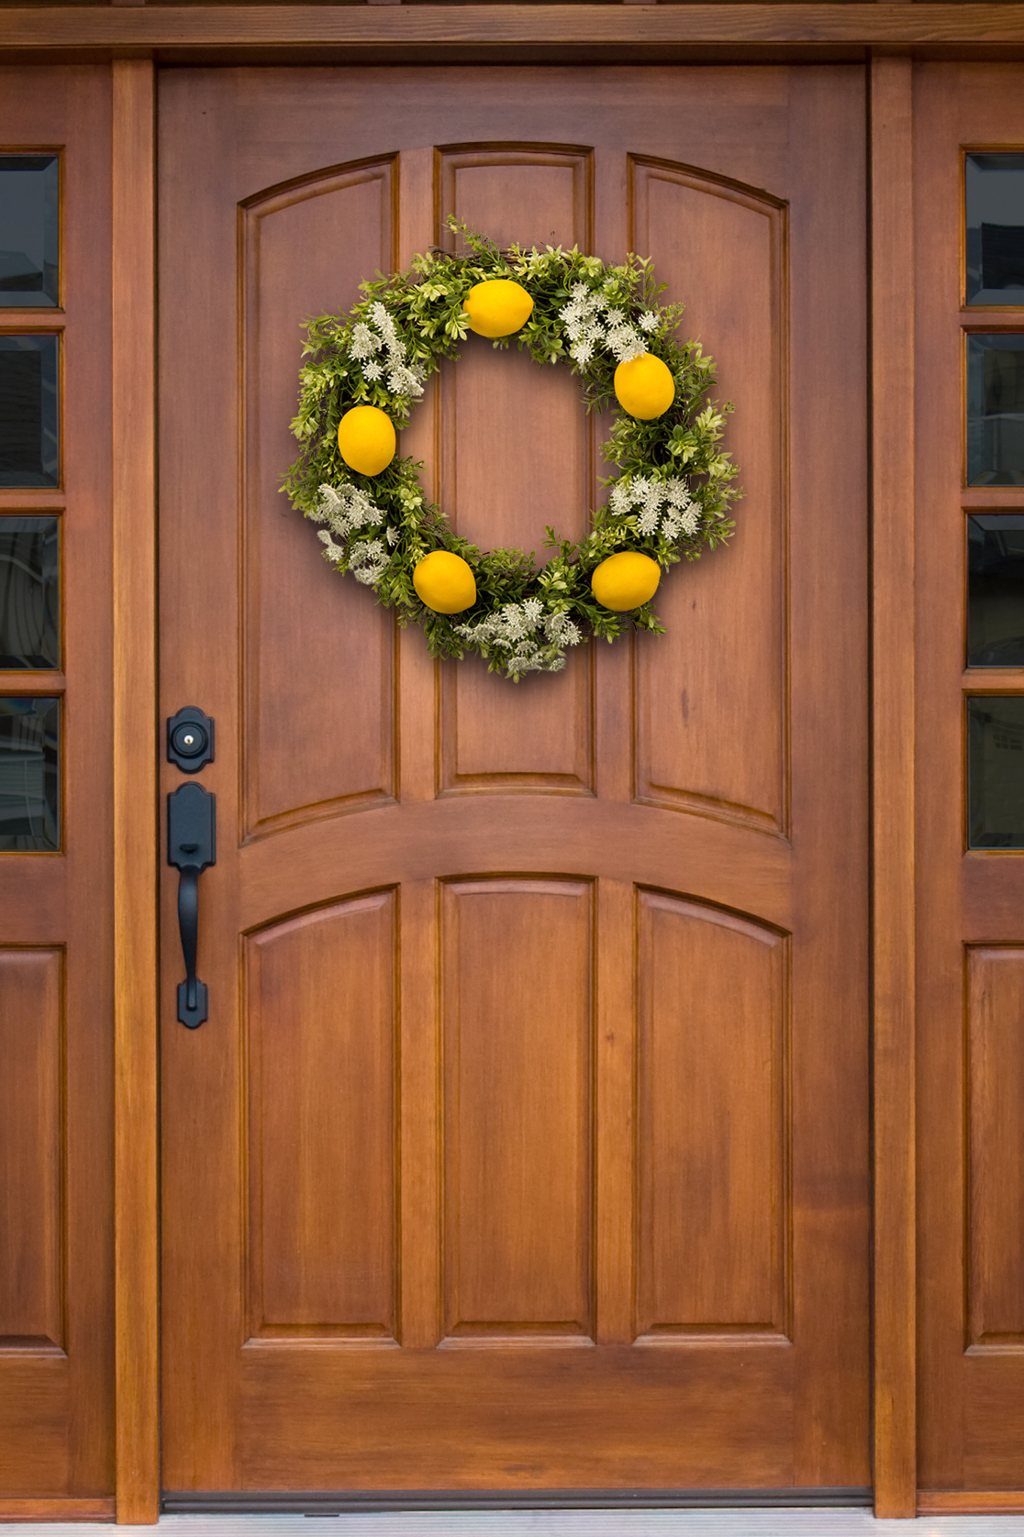 lemon-citrus-wreath